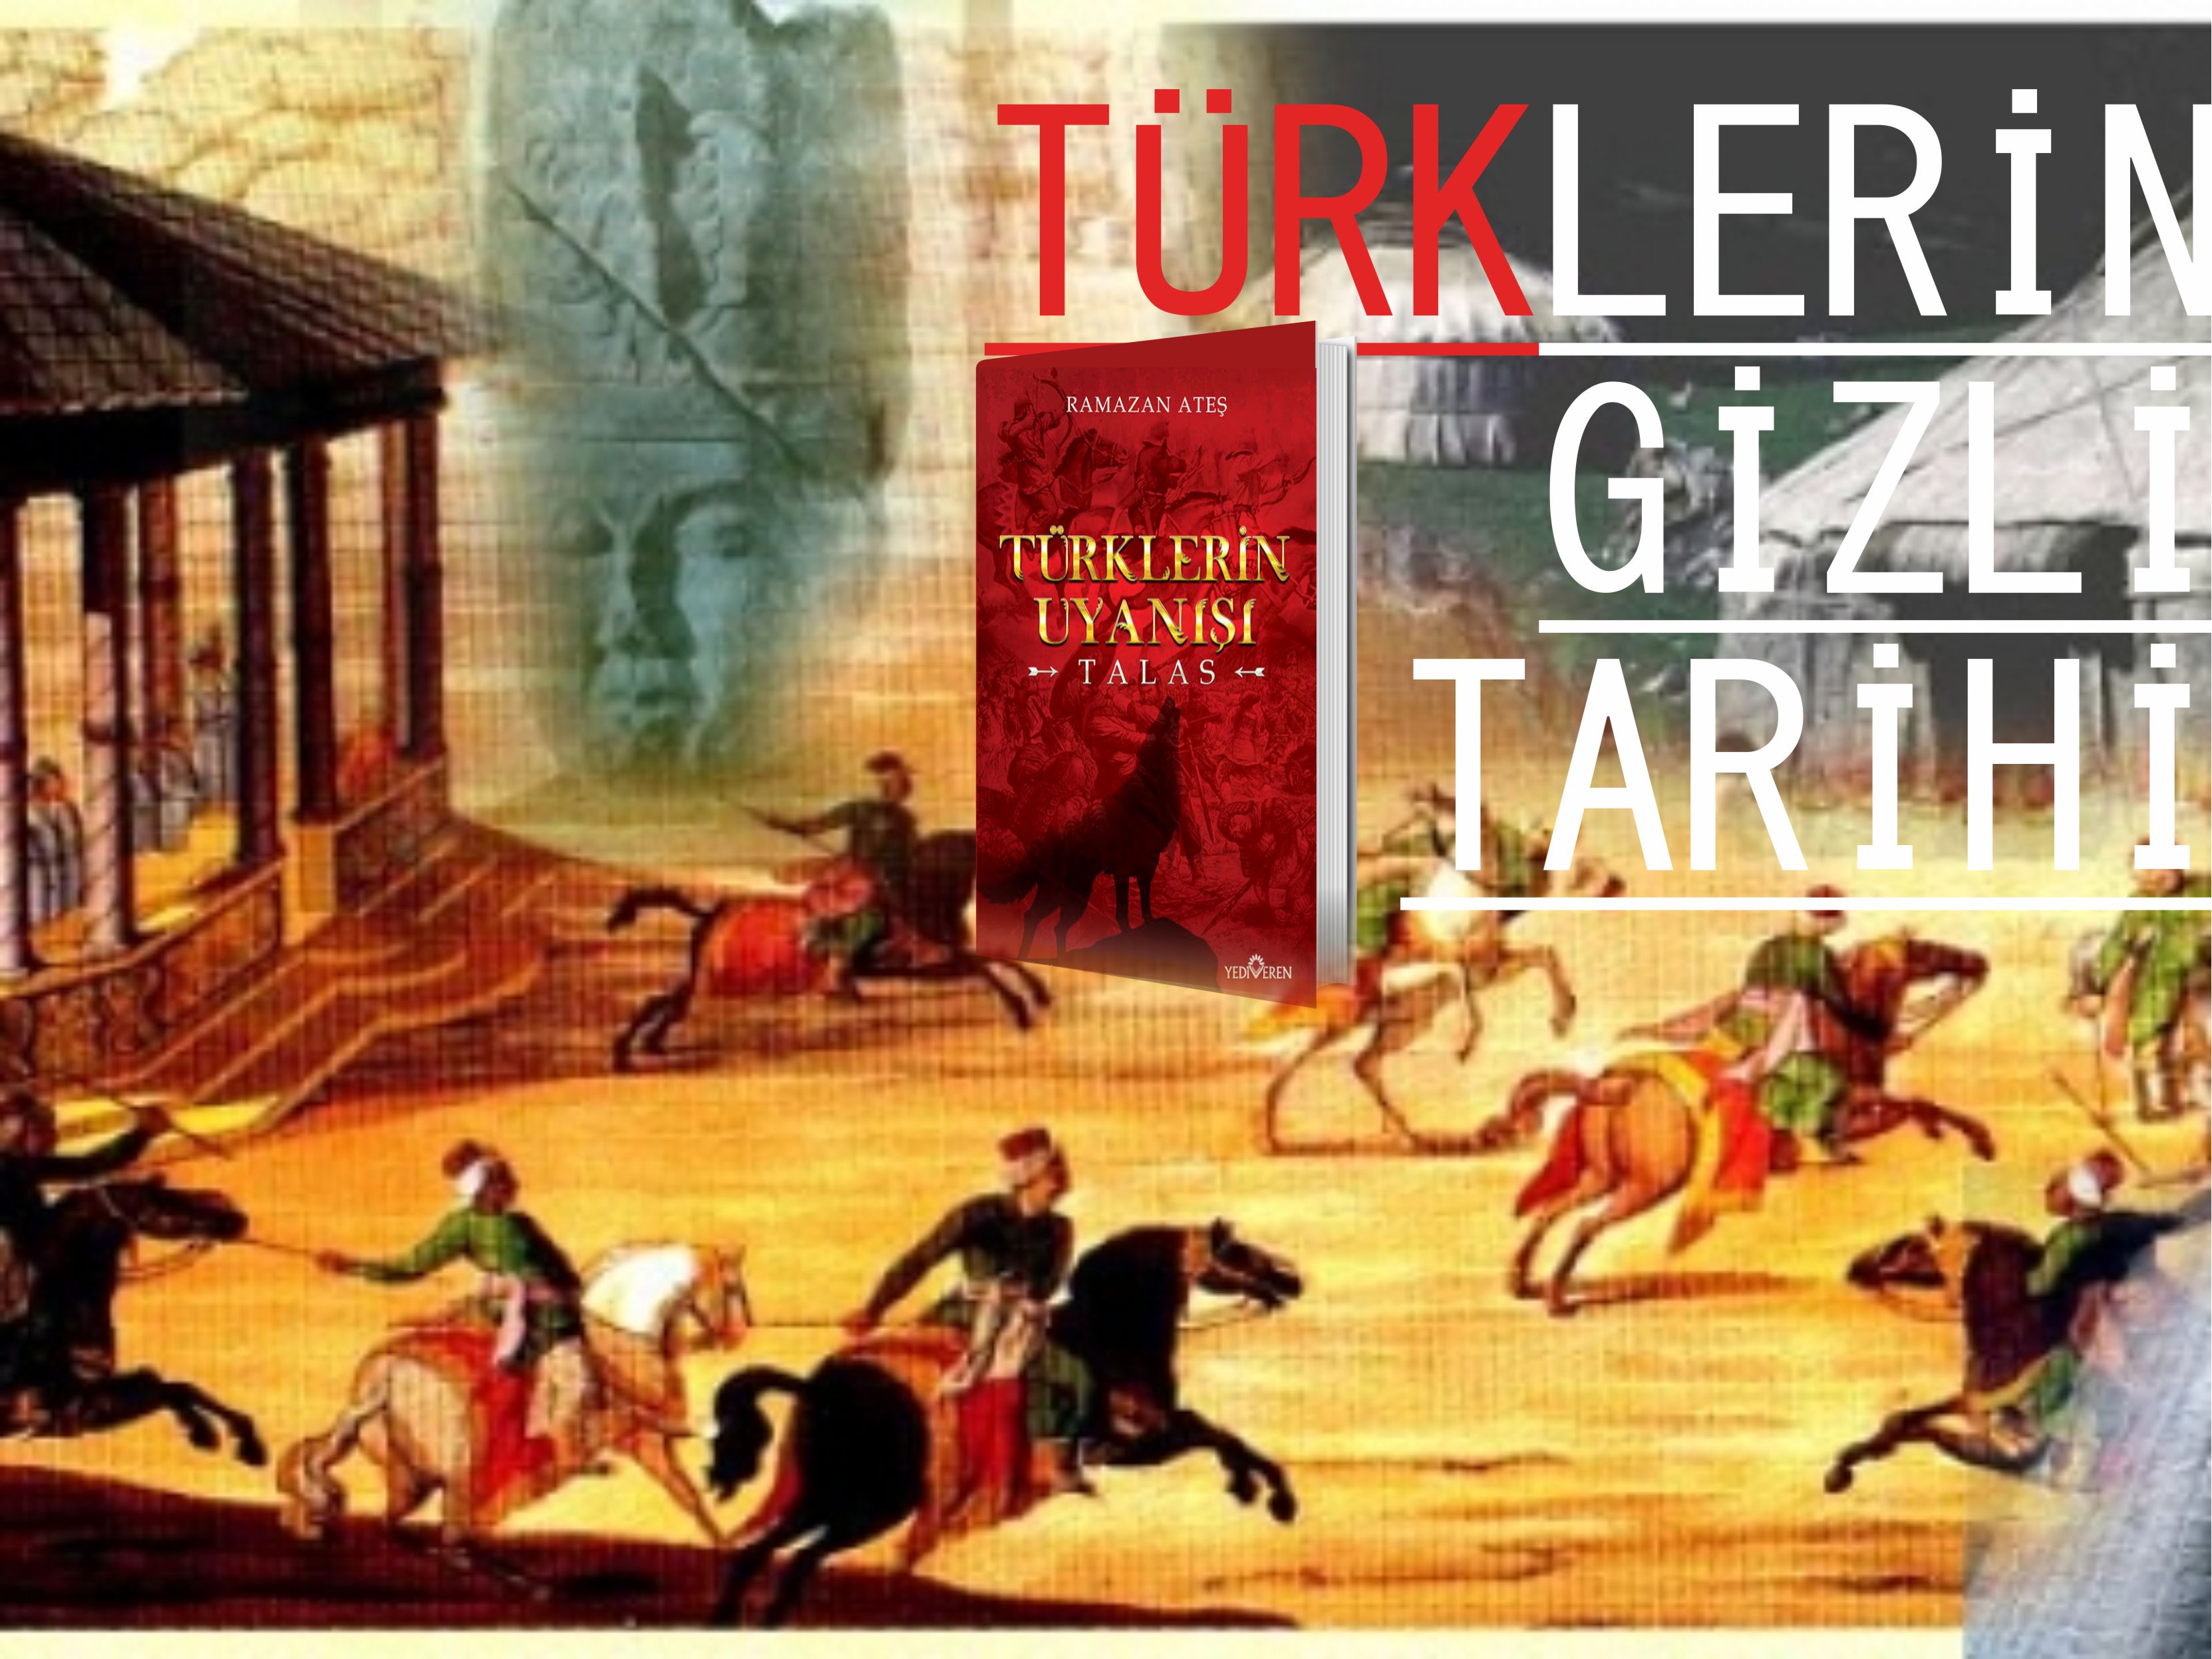 turklerin-gizli-tarihi-ramazan-ates-kitaplari-jpg.27160